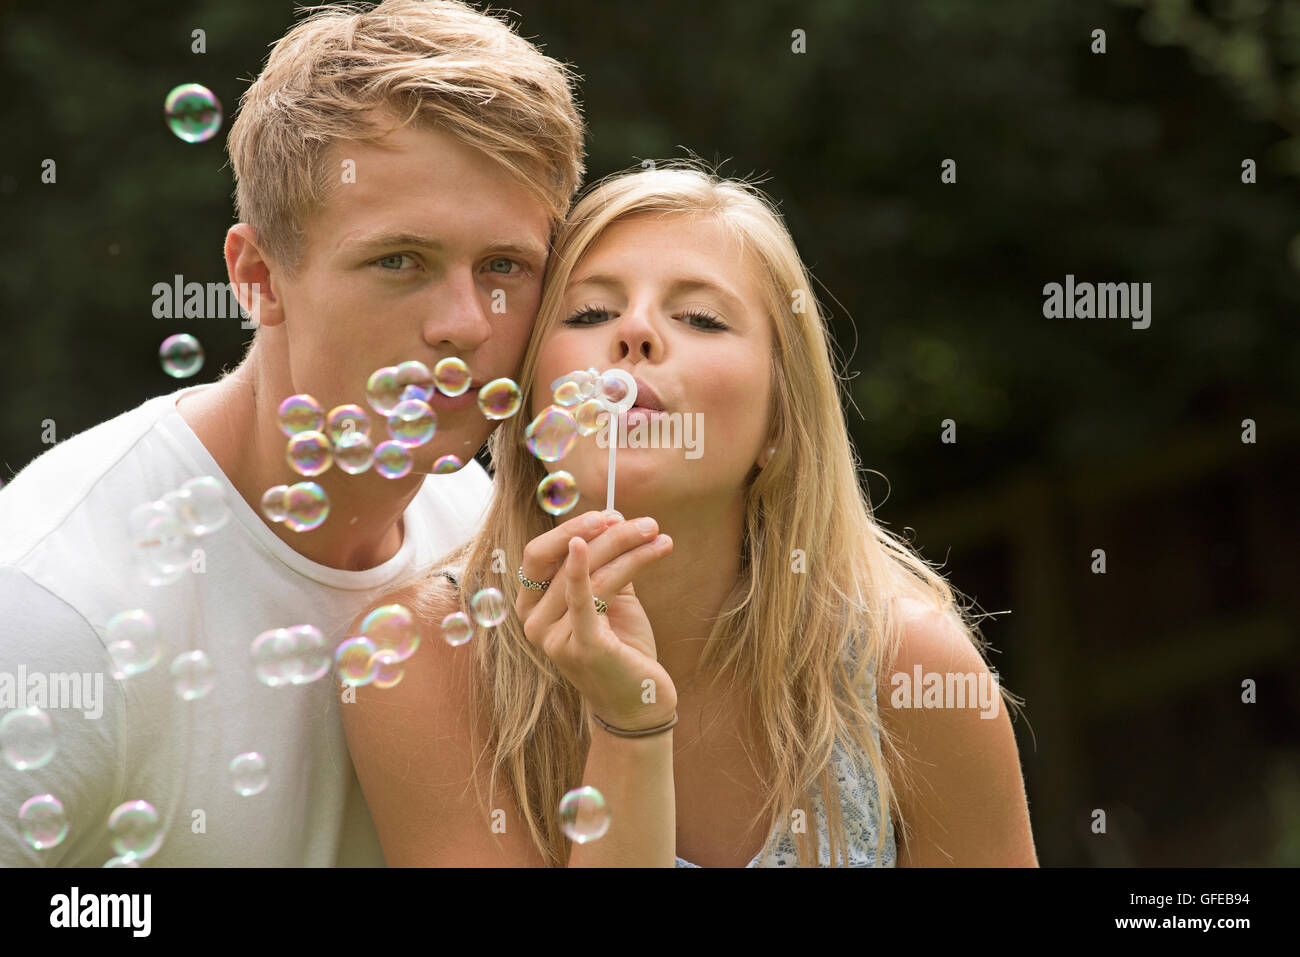 TEENAGER BLOWING BUBBLES A teenage Girl bläst Seifenblasen bei ihrem Freund Stockfoto